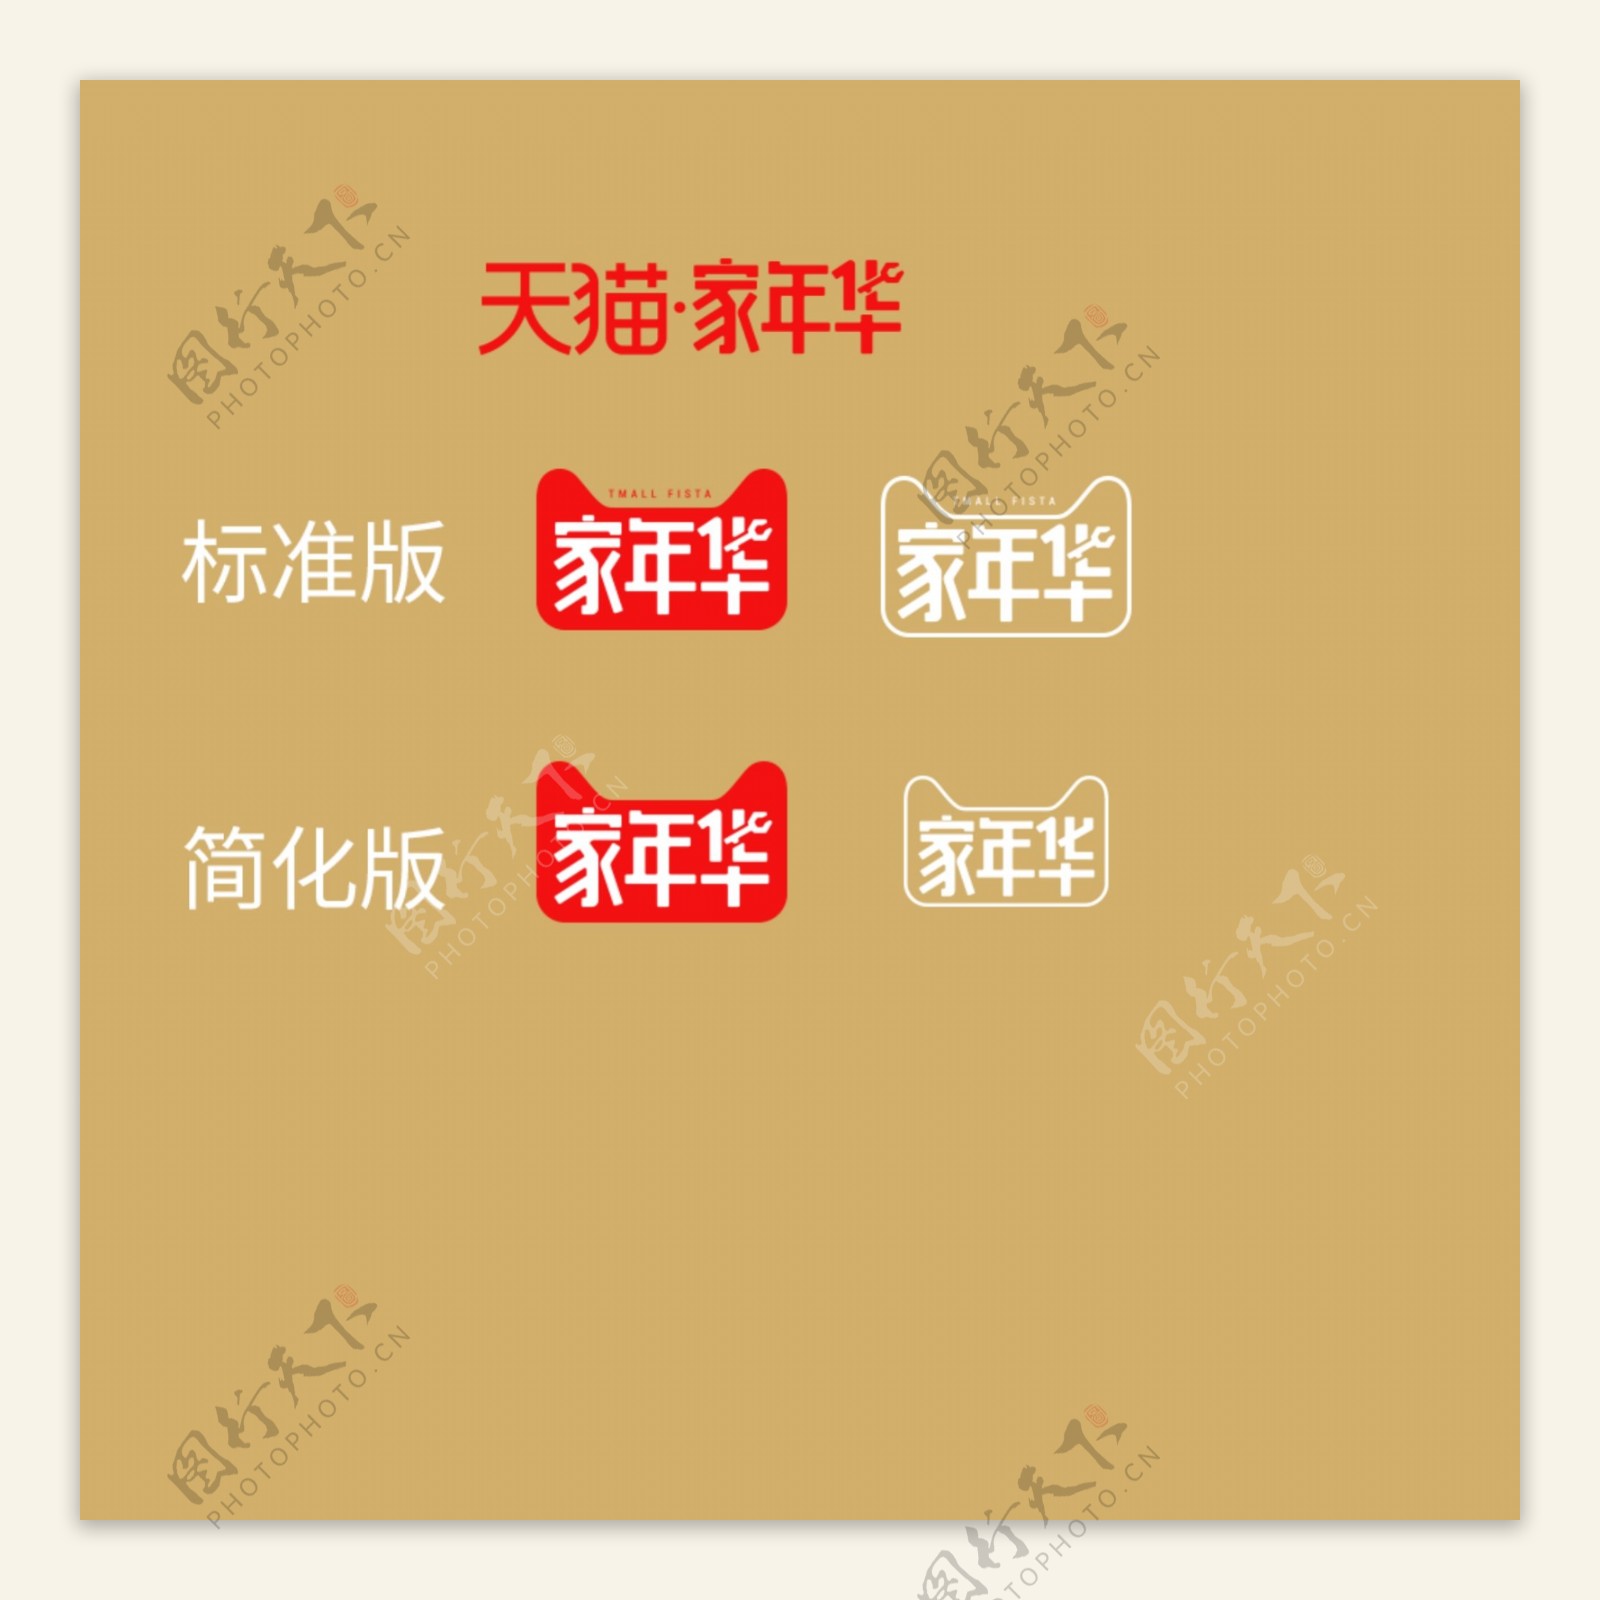 2018家年华品牌规范logo